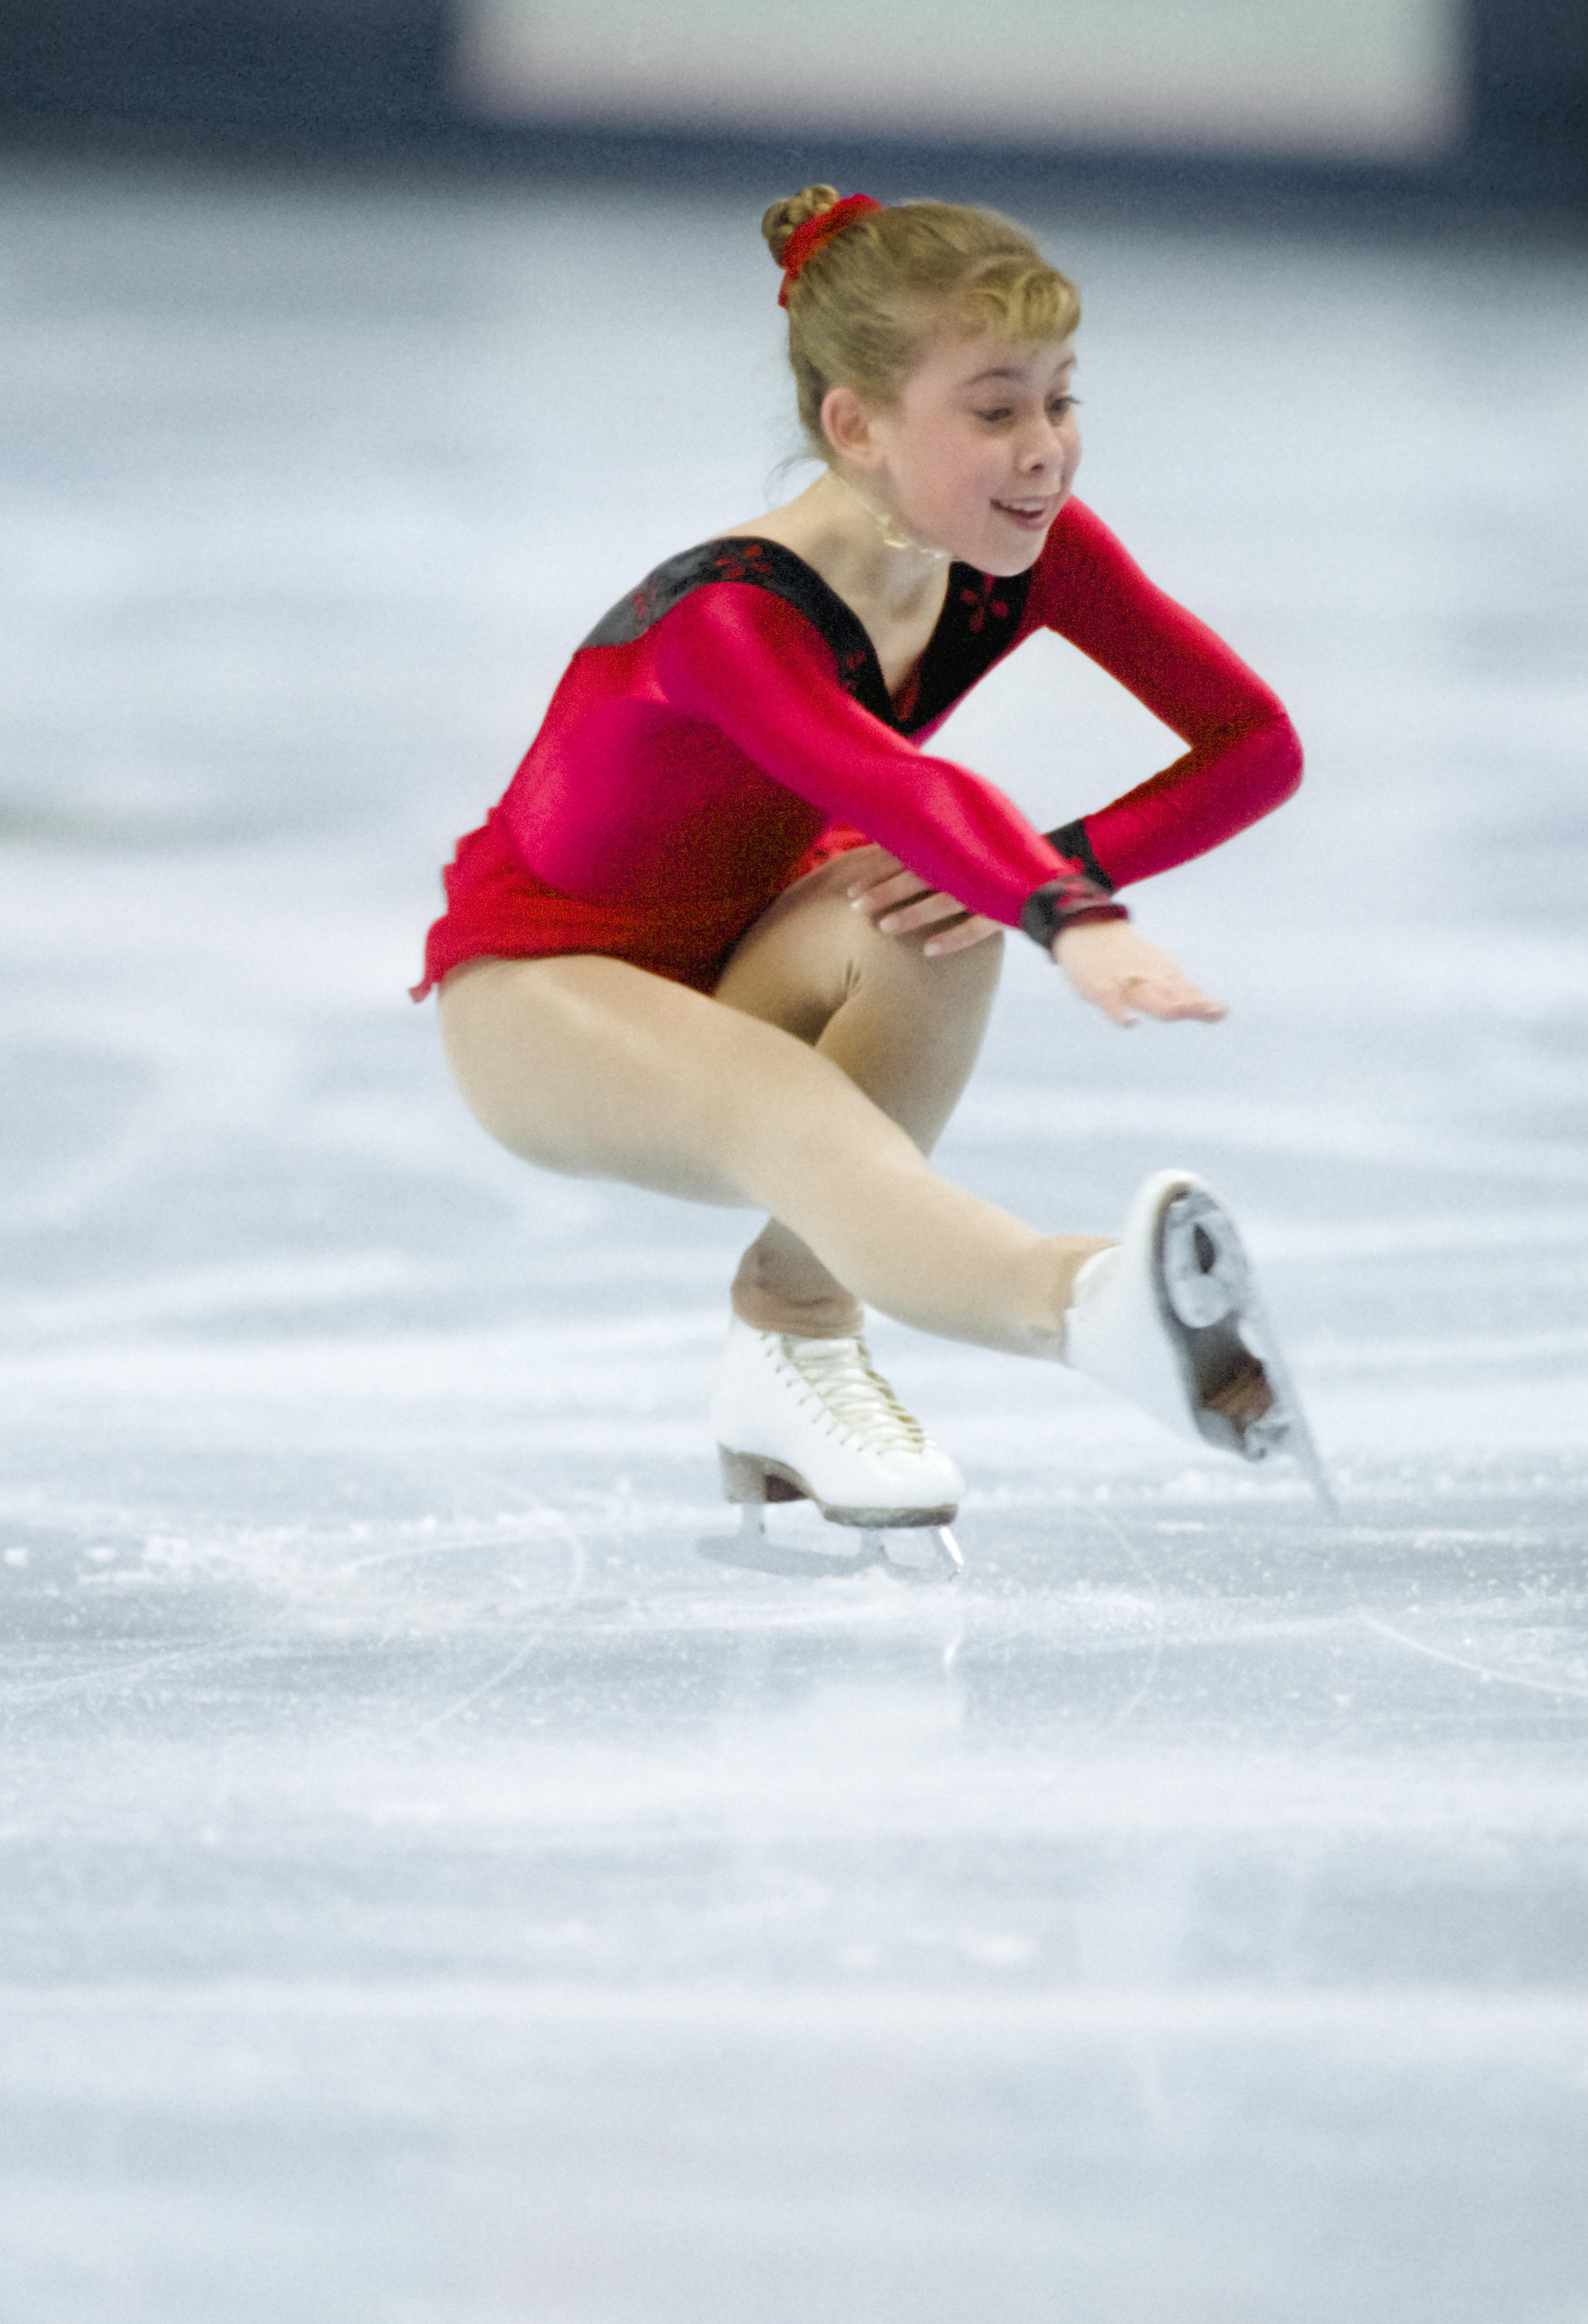 Tara Lipinski éblouit lors du segment de style libre de la compétition des simples dames aux Championnats de patinage artistique des États-Unis de 1996, le 21 janvier 1996, à San Jose, Californie | Source : Getty Images